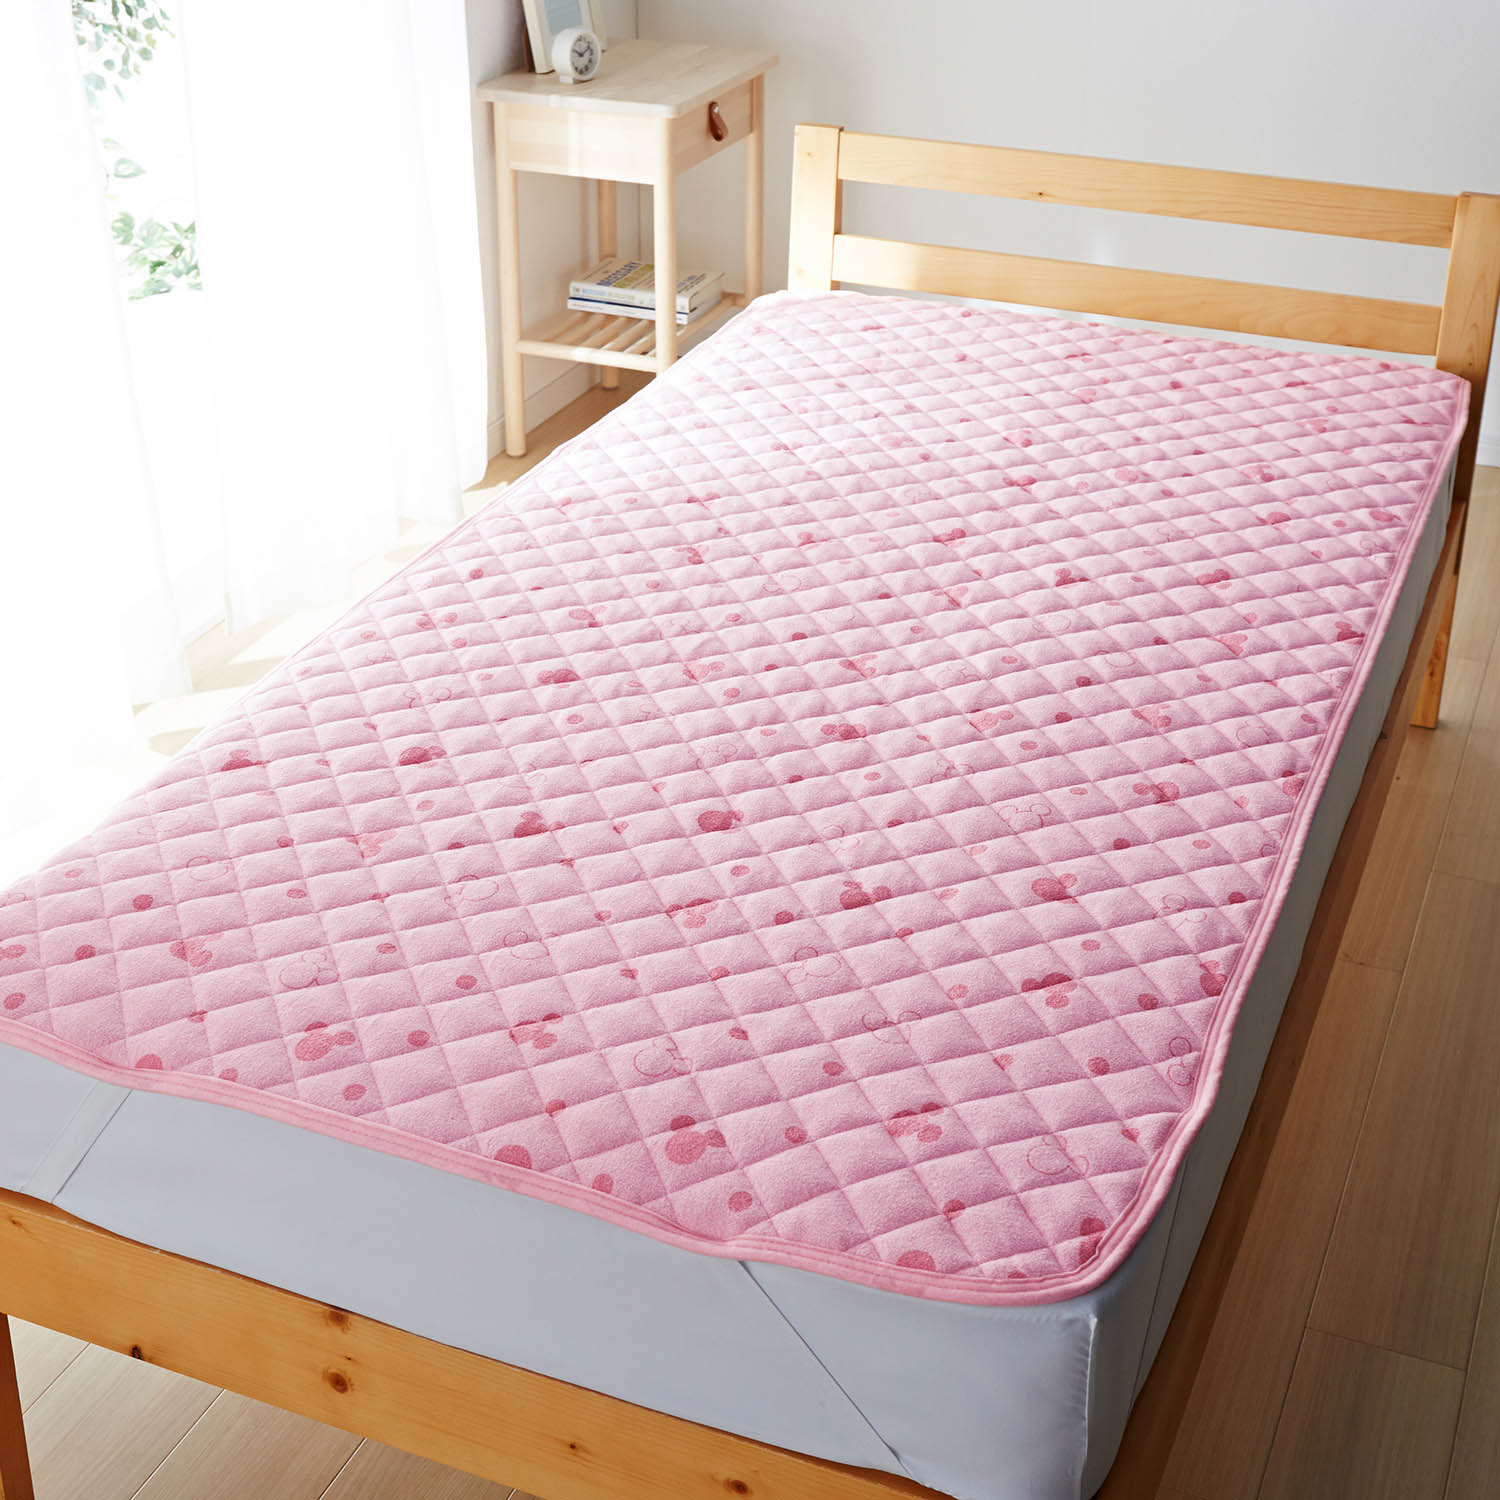 ベルメゾン ディズニー 綿素材を使ったソフトパイルの敷きパッド「ミッキーモチーフ」 ピンク系 シングル